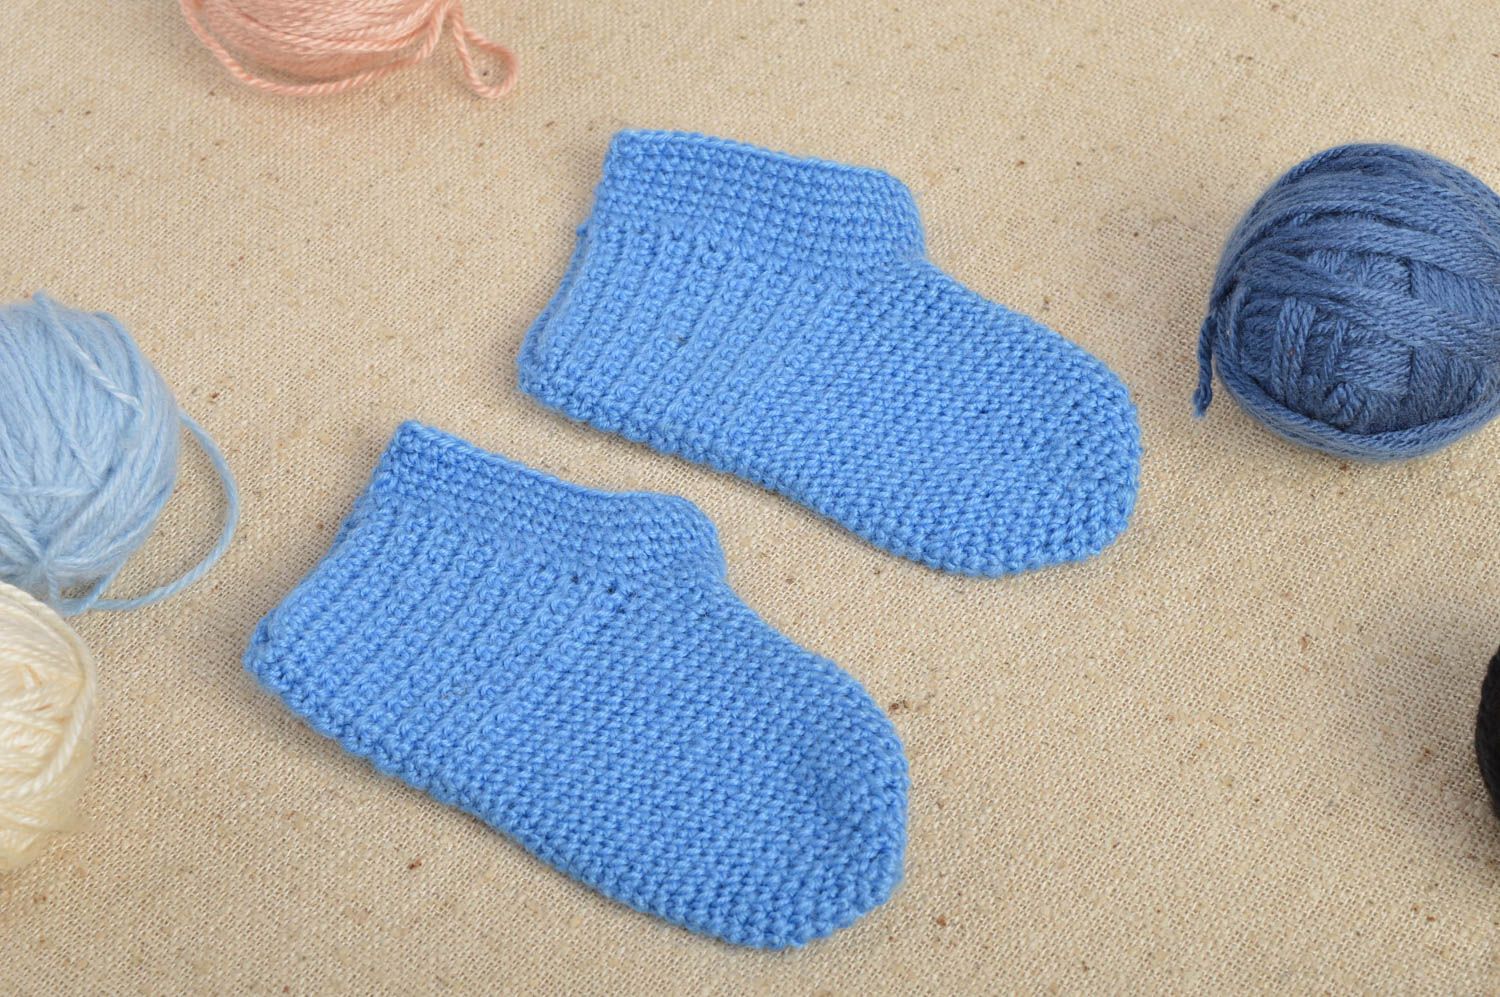 Chaussons bébé fait main Pantoufles tricot bleu polyacrylique Vêtement bébé photo 1